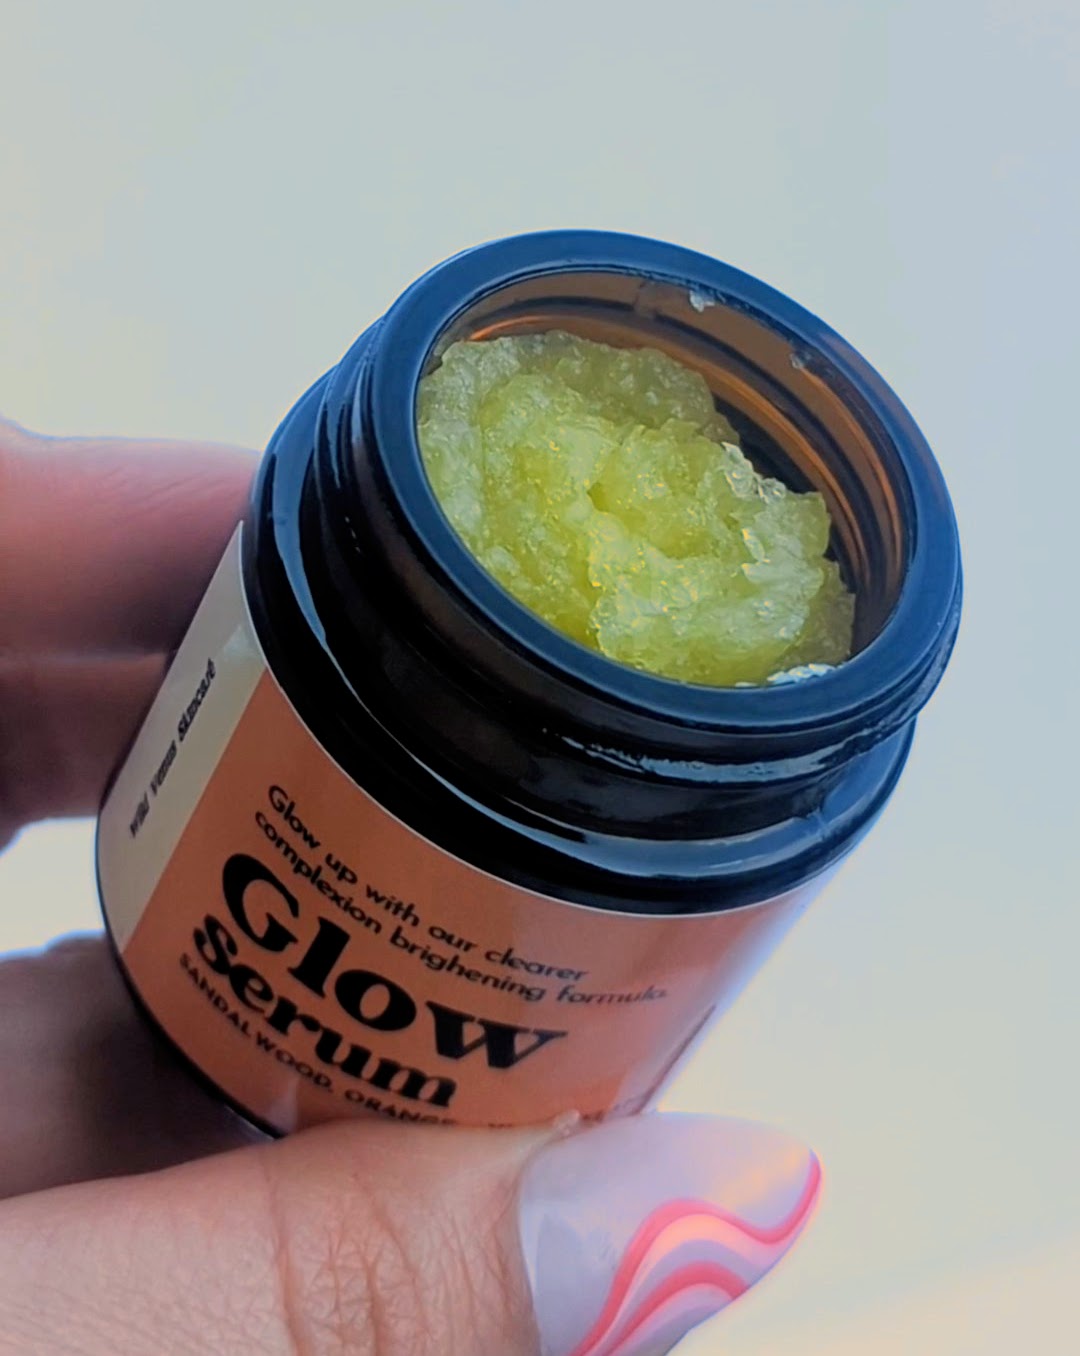 A hand tilts an open pot of Glow serum towards the viewer, revealing a golden solid oil inside. 